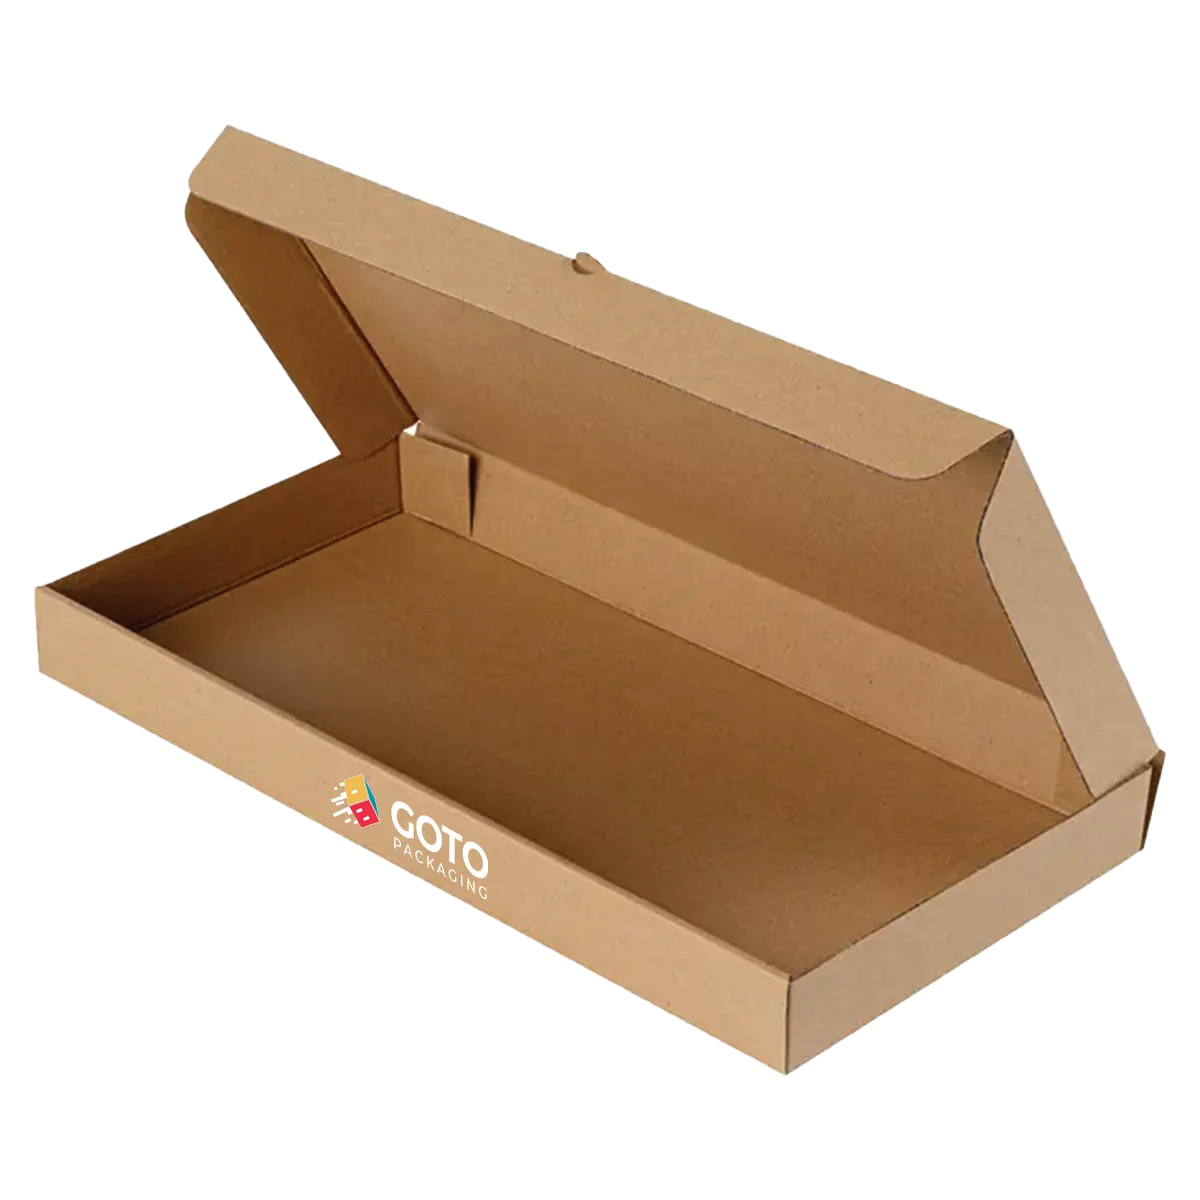 Flatbread Pizza Boxes